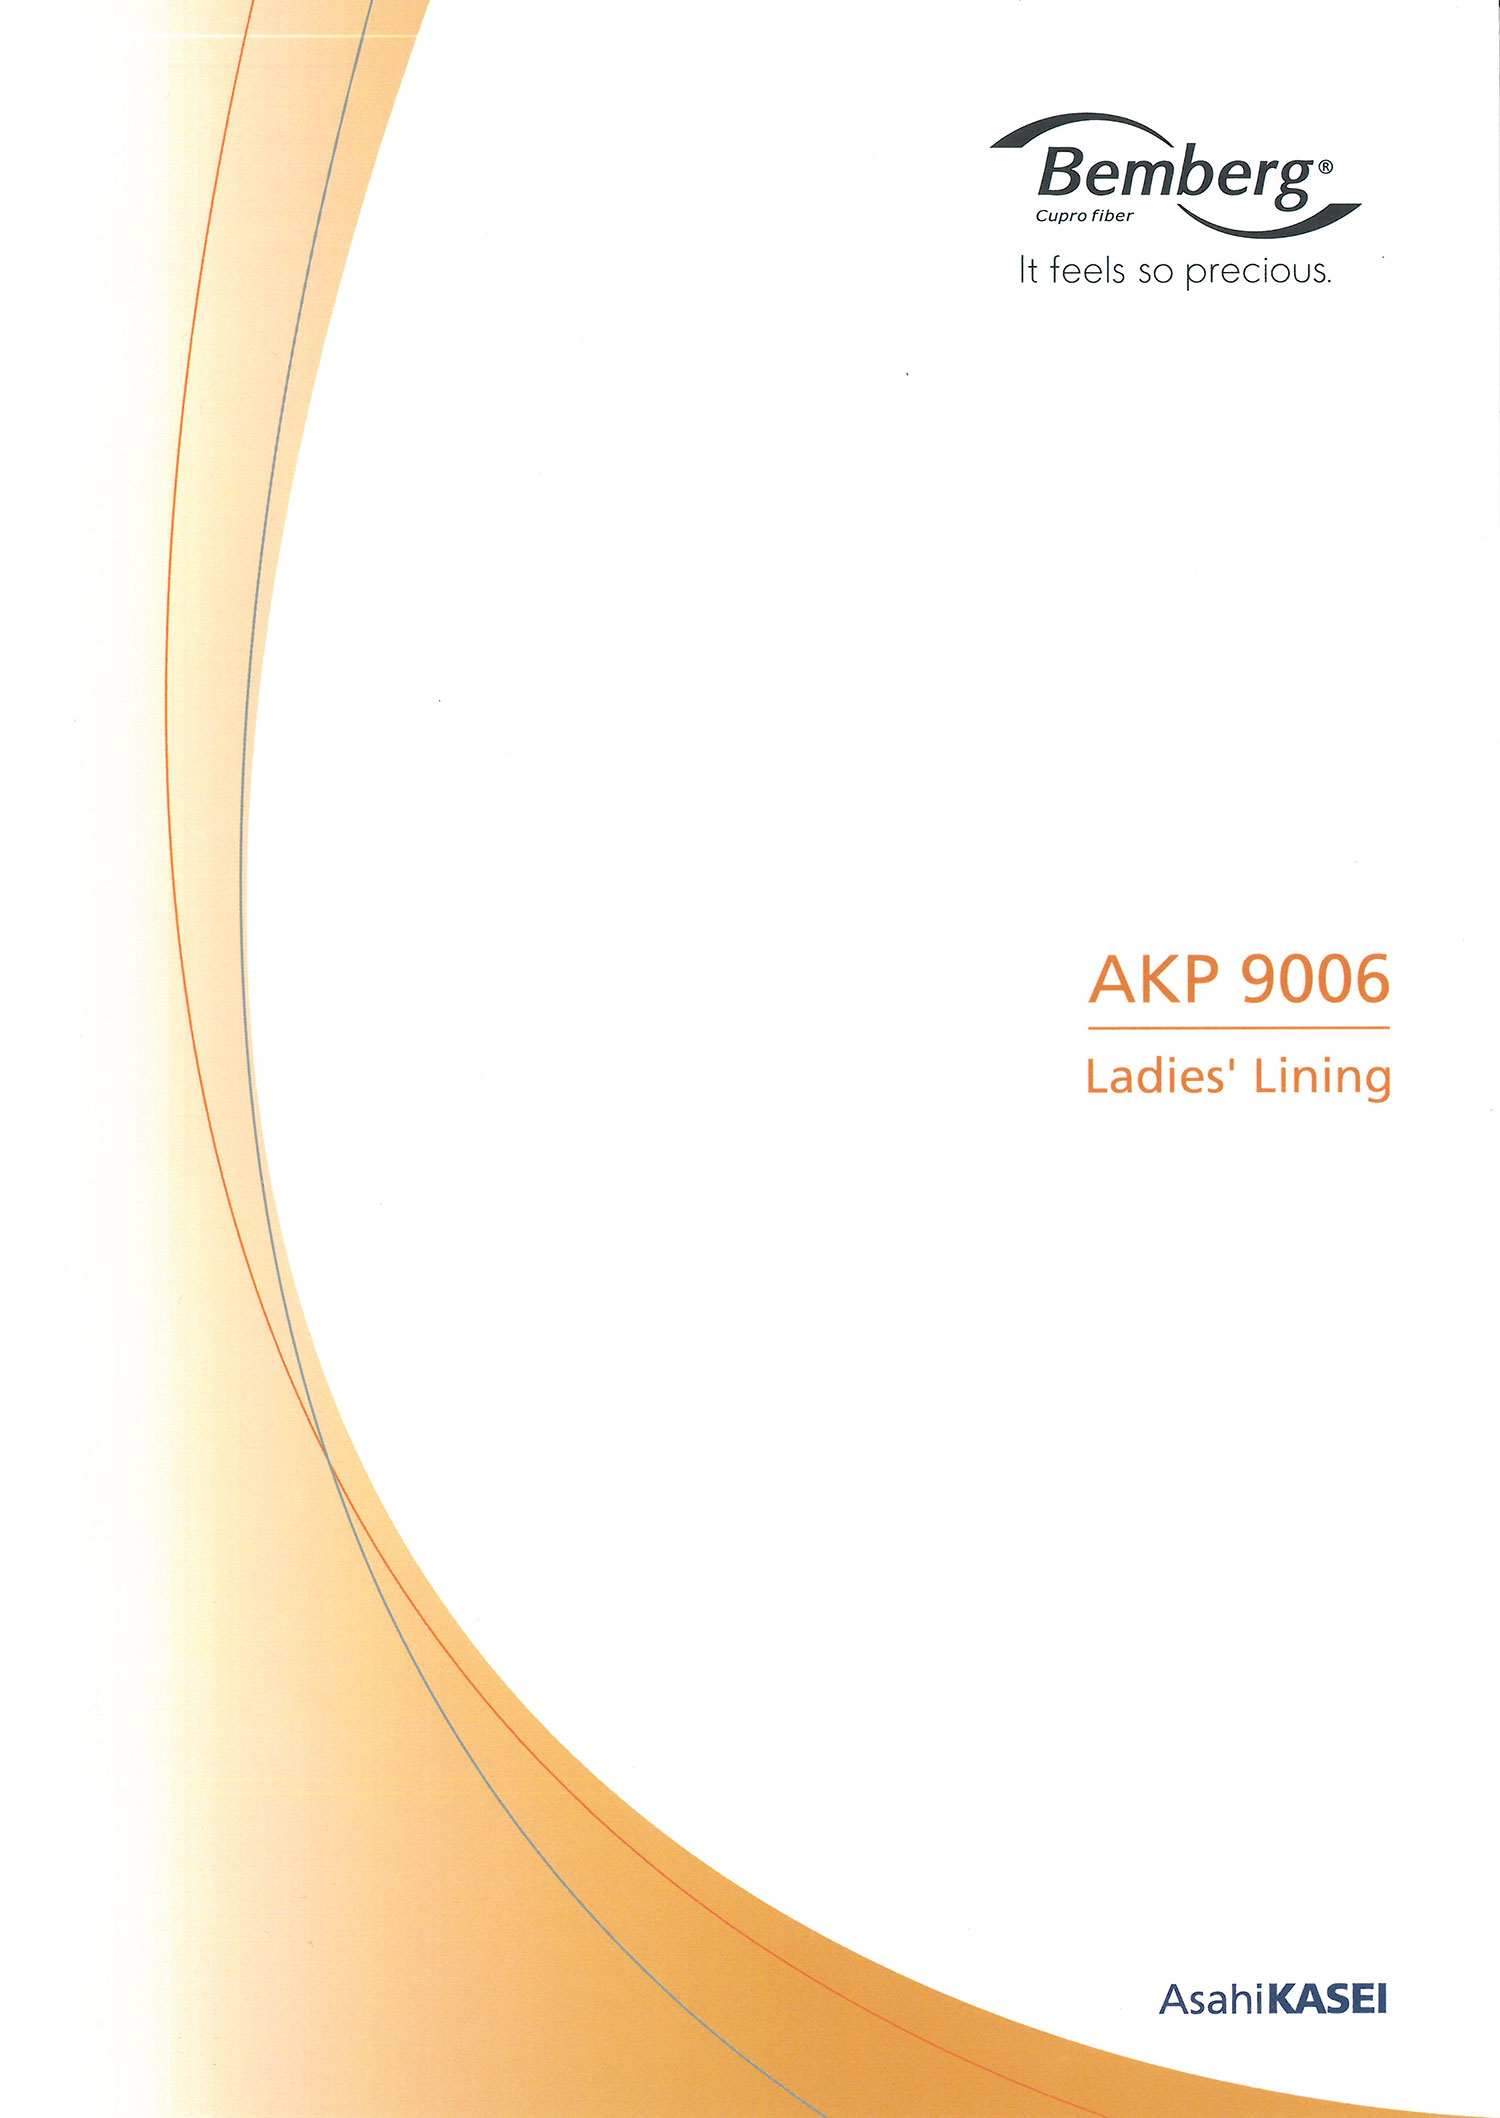 AKP9006 賓霸里料Luxure 旭化成